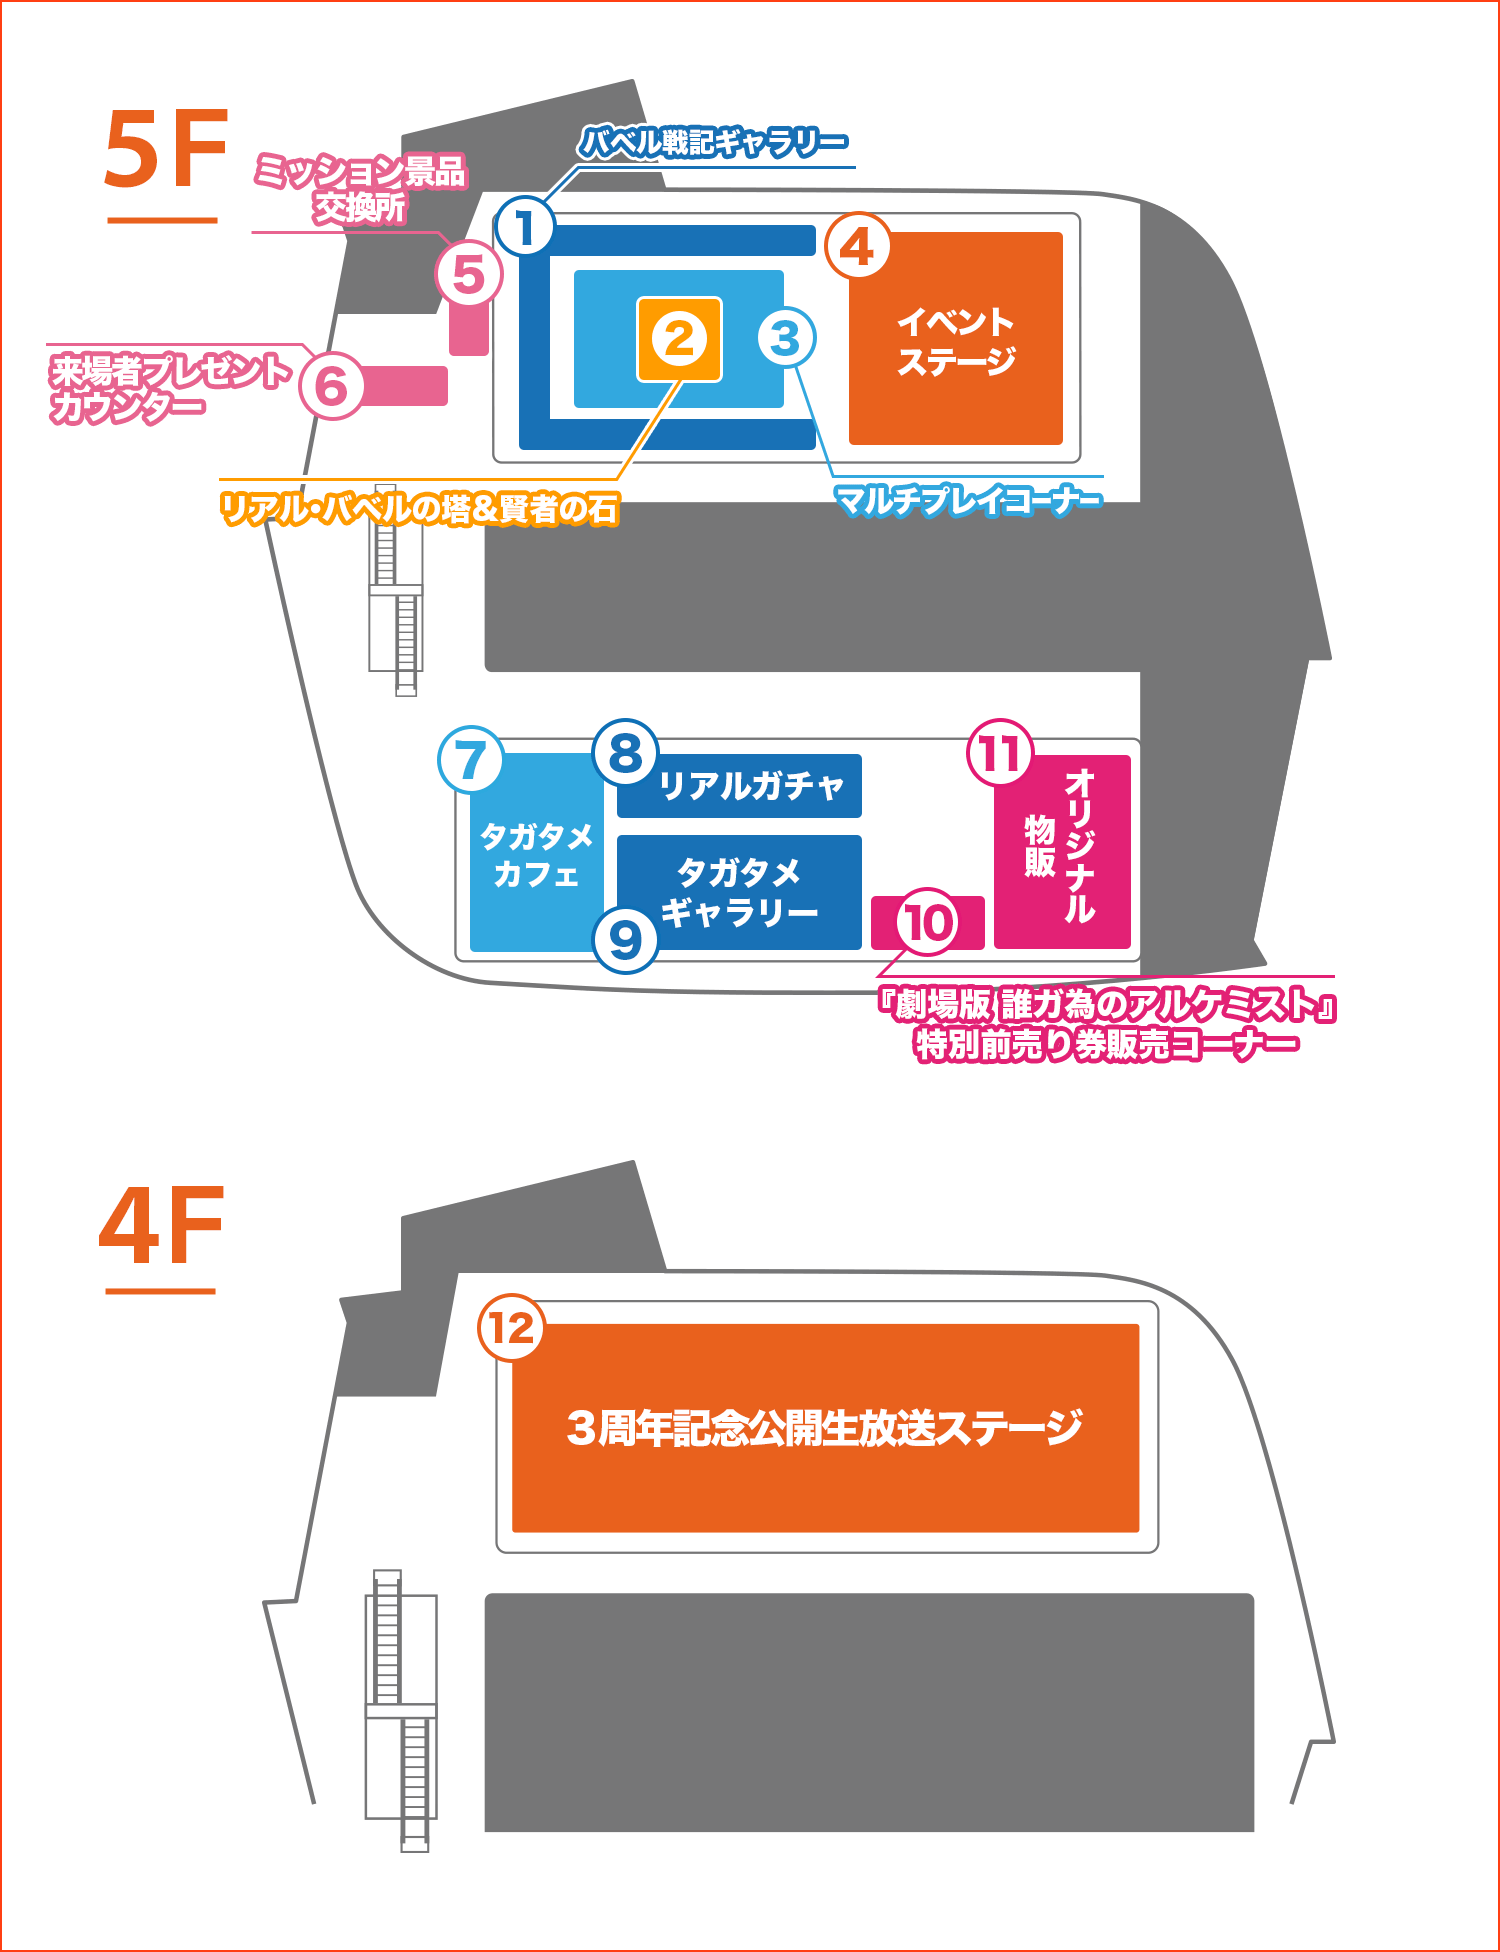 エリアマップ/コンテンツ紹介のmap